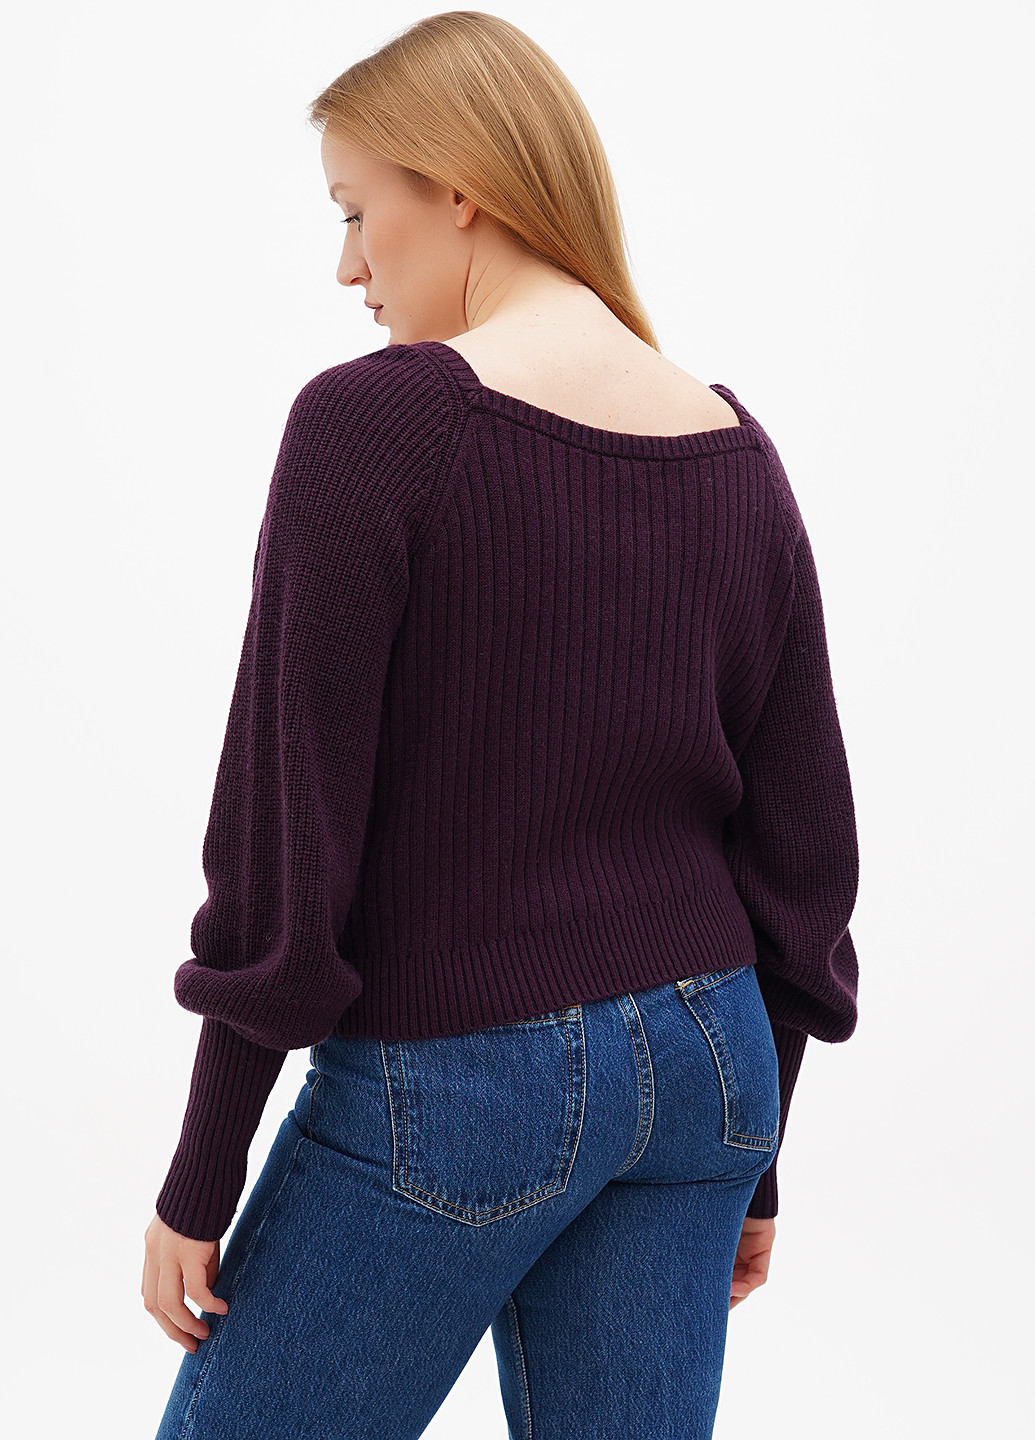 Сливовый демисезонный пуловер пуловер Boden